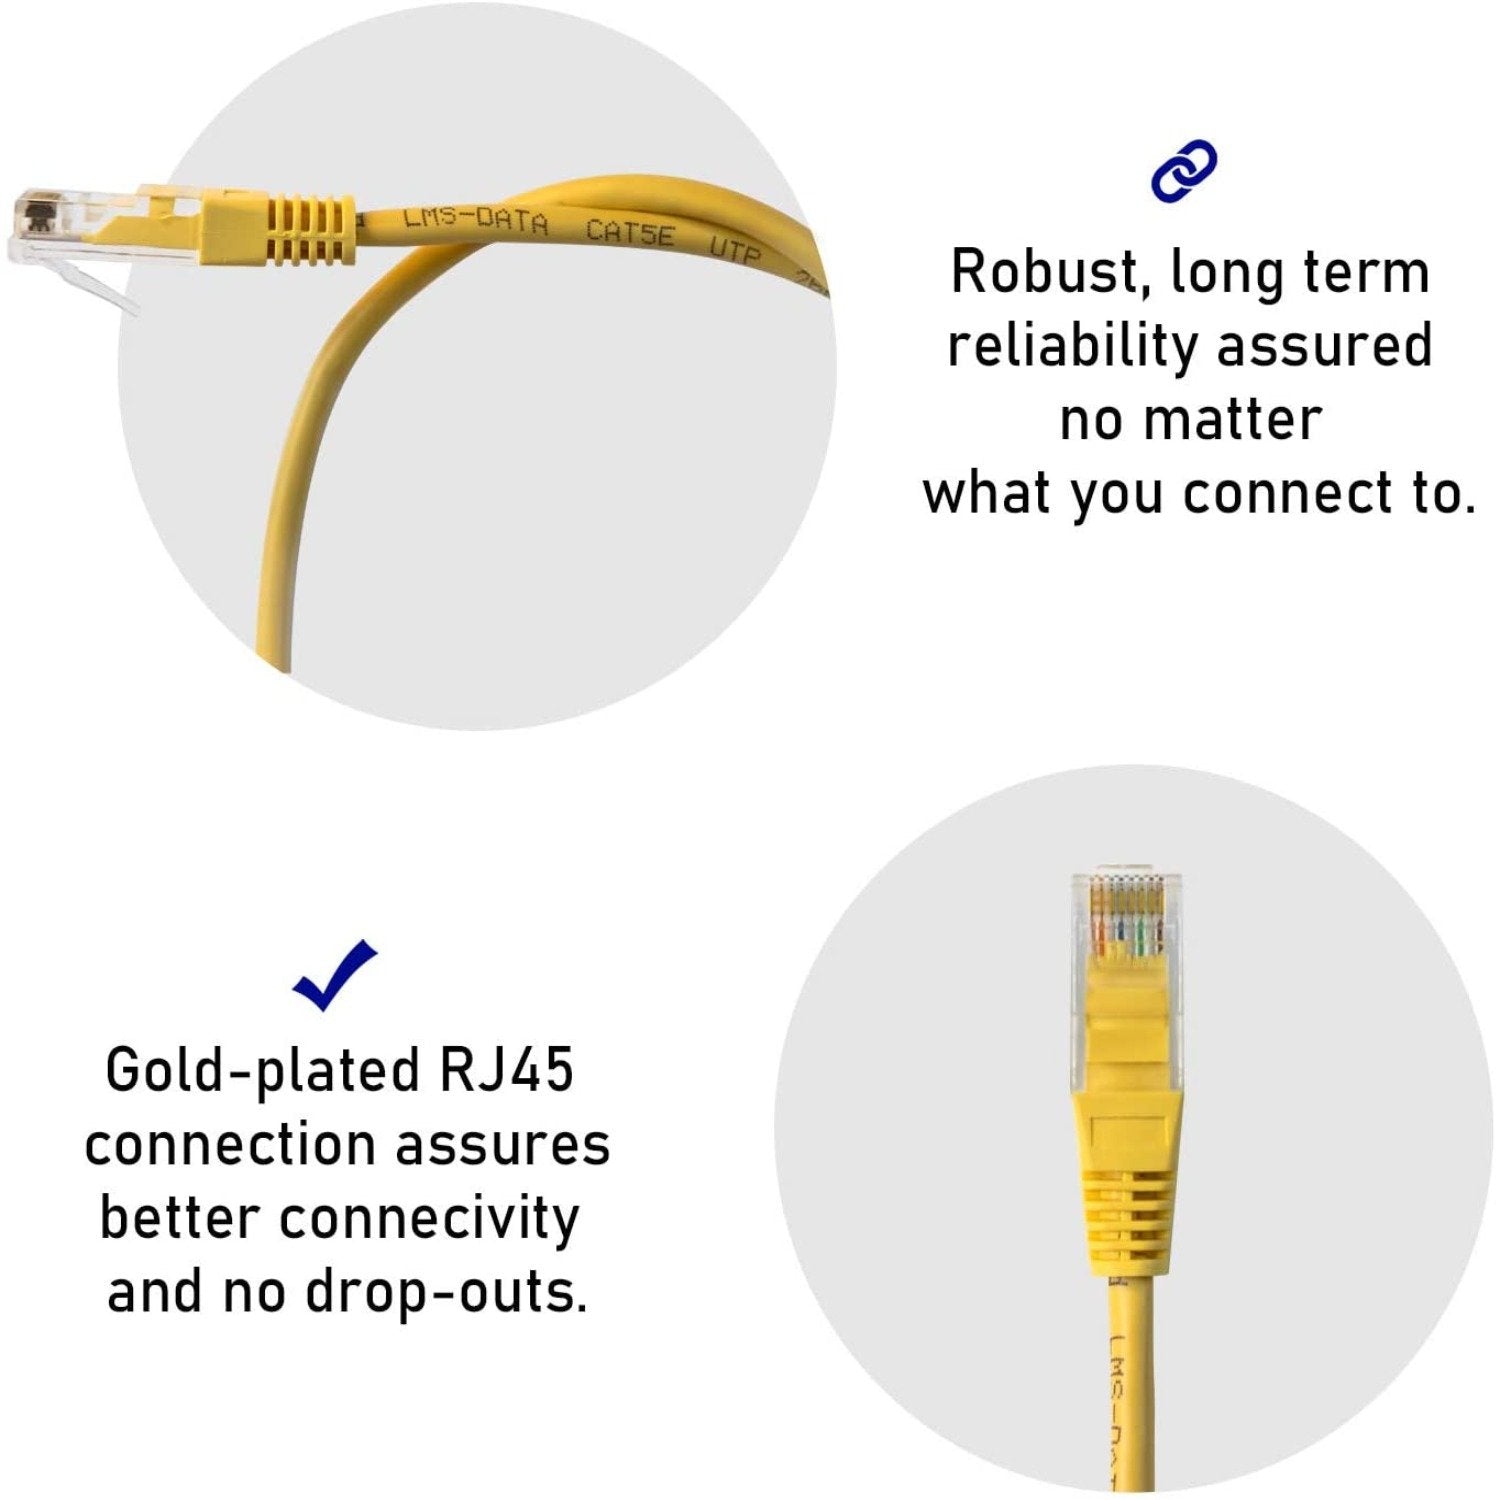 0.5m LMS Data Ethernet Cat5e RJ45 UTP Patch cable cord, LAN 10/100/1000Mbit/s Cable suitable